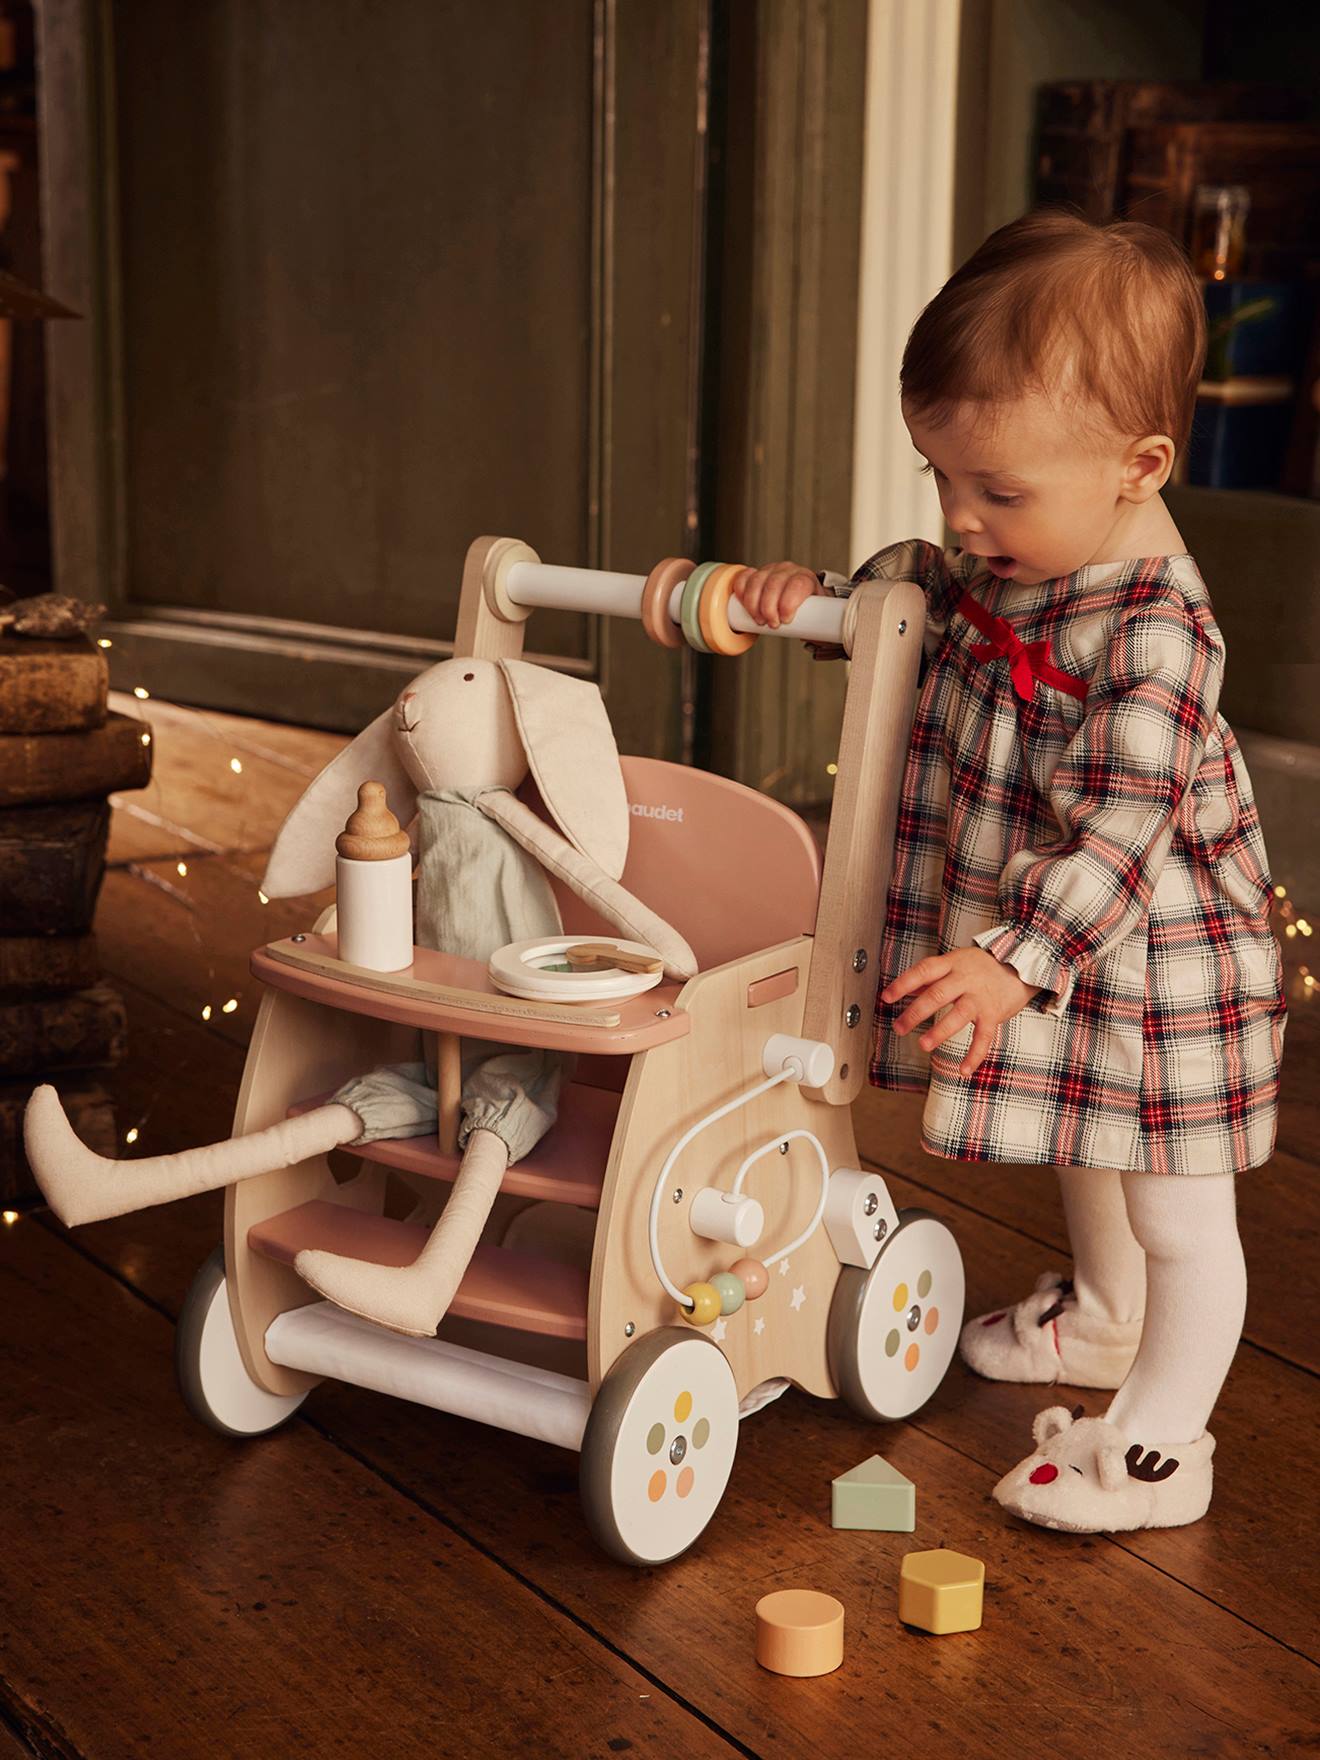 Porte-roue de chariot pour bébé / poussette poussette Poussette Pou